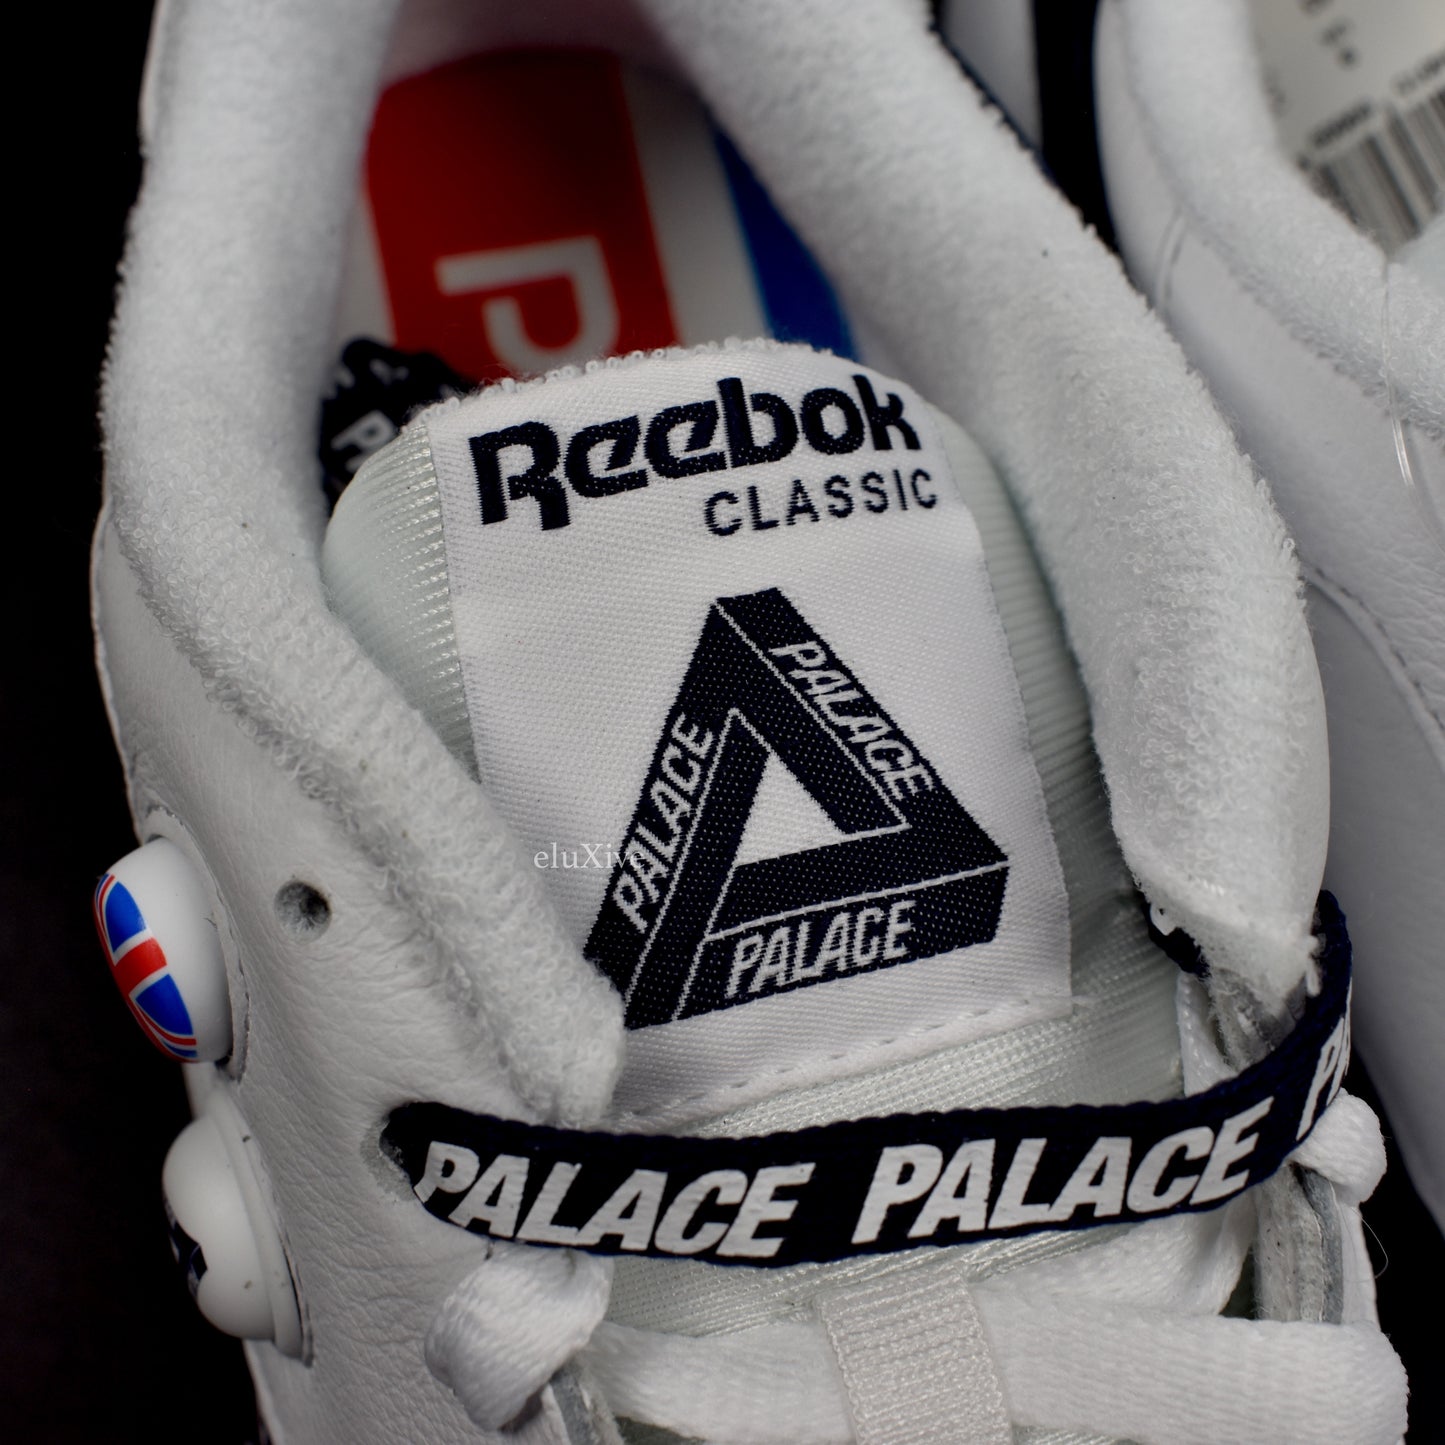 Palace x Reebok - CL Pump Sneakers (White)